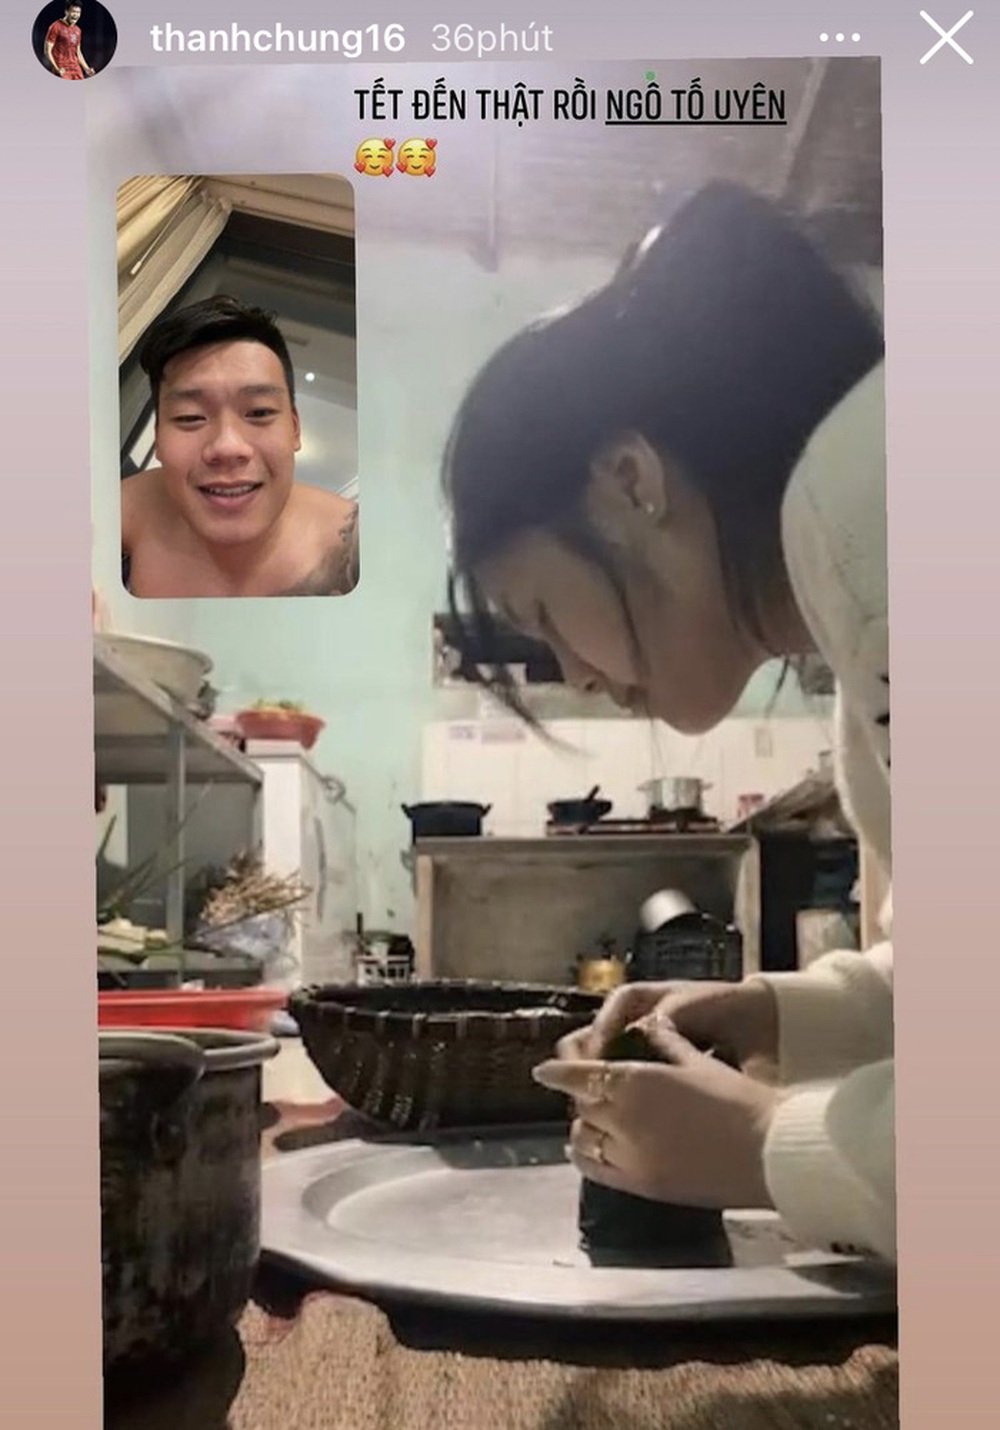 Tết xa nhà, Thành Chung gọi video xem bạn gái gói bánh chưng - Ảnh 1.